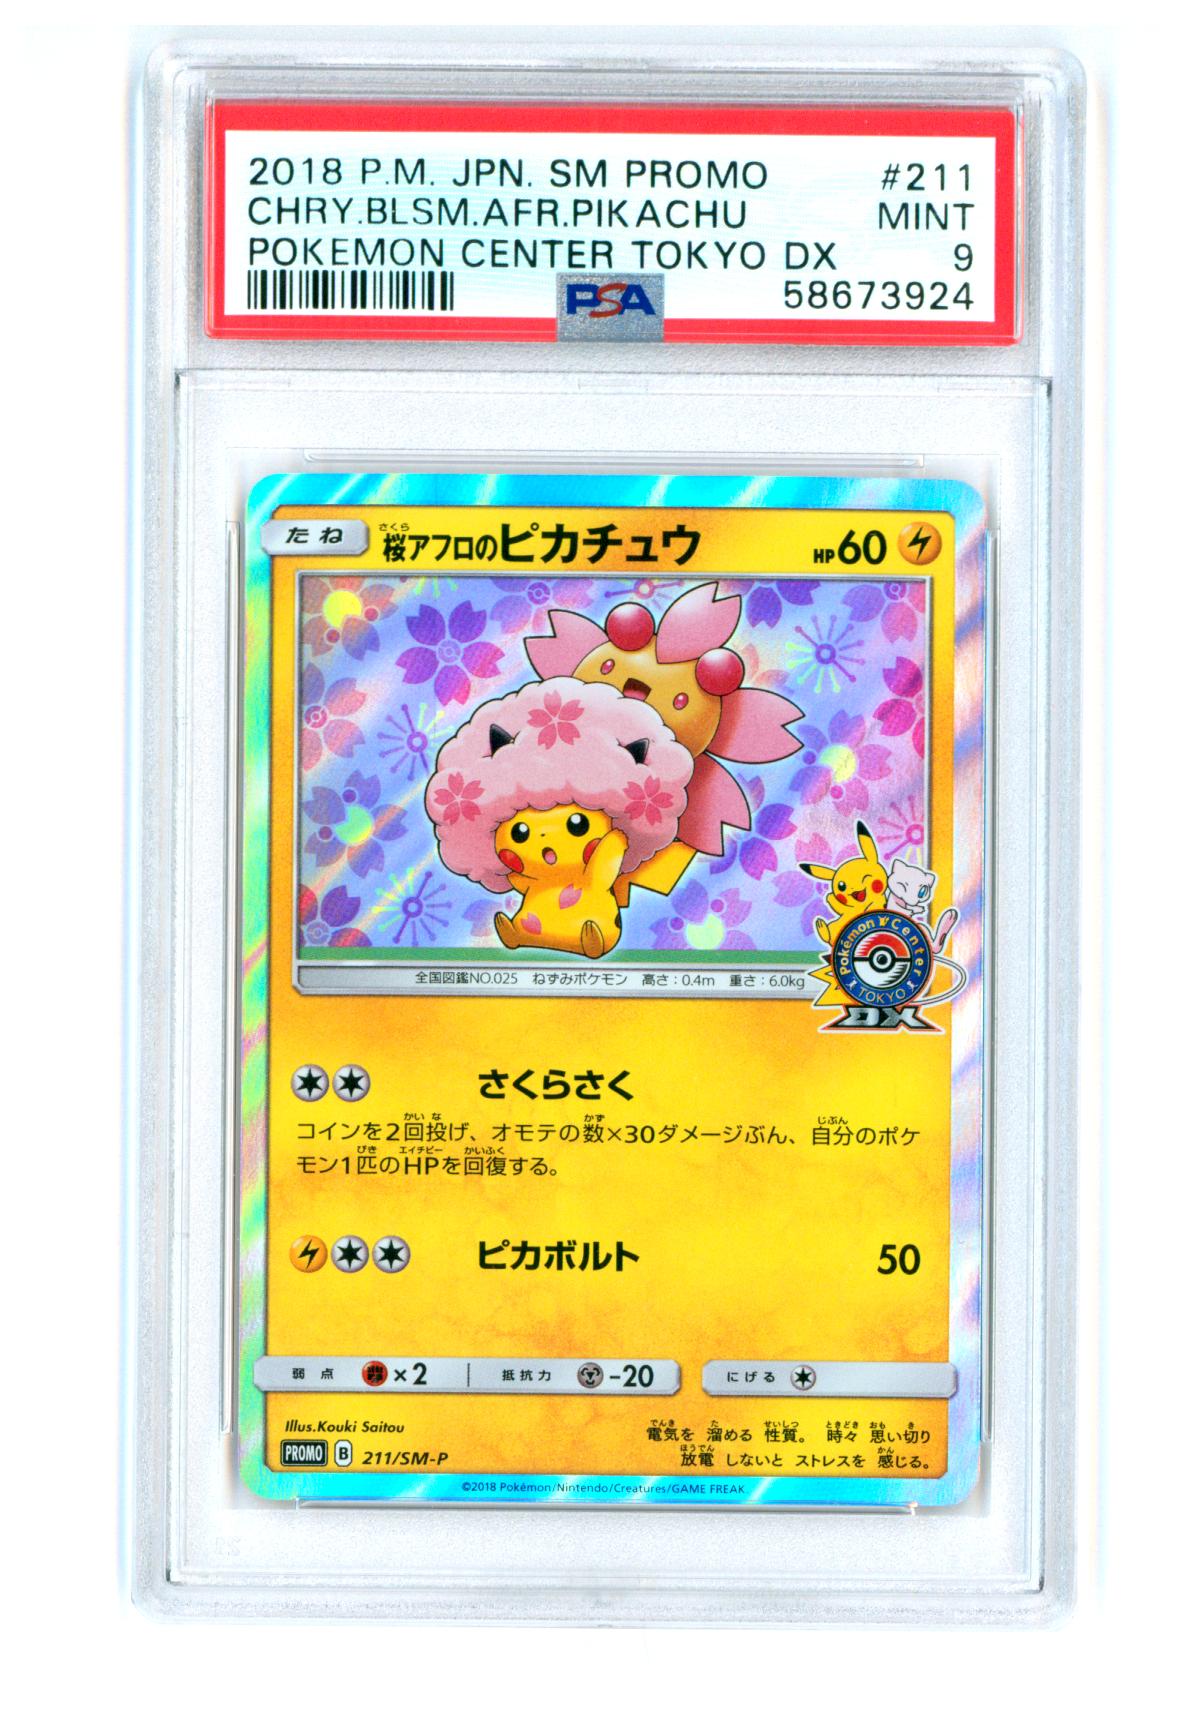 Cherry Blossom Afro Pikachu 211/SM-P - Pokemon Center Tokyo DX Promo - PSA 9 MINT - Pokémon